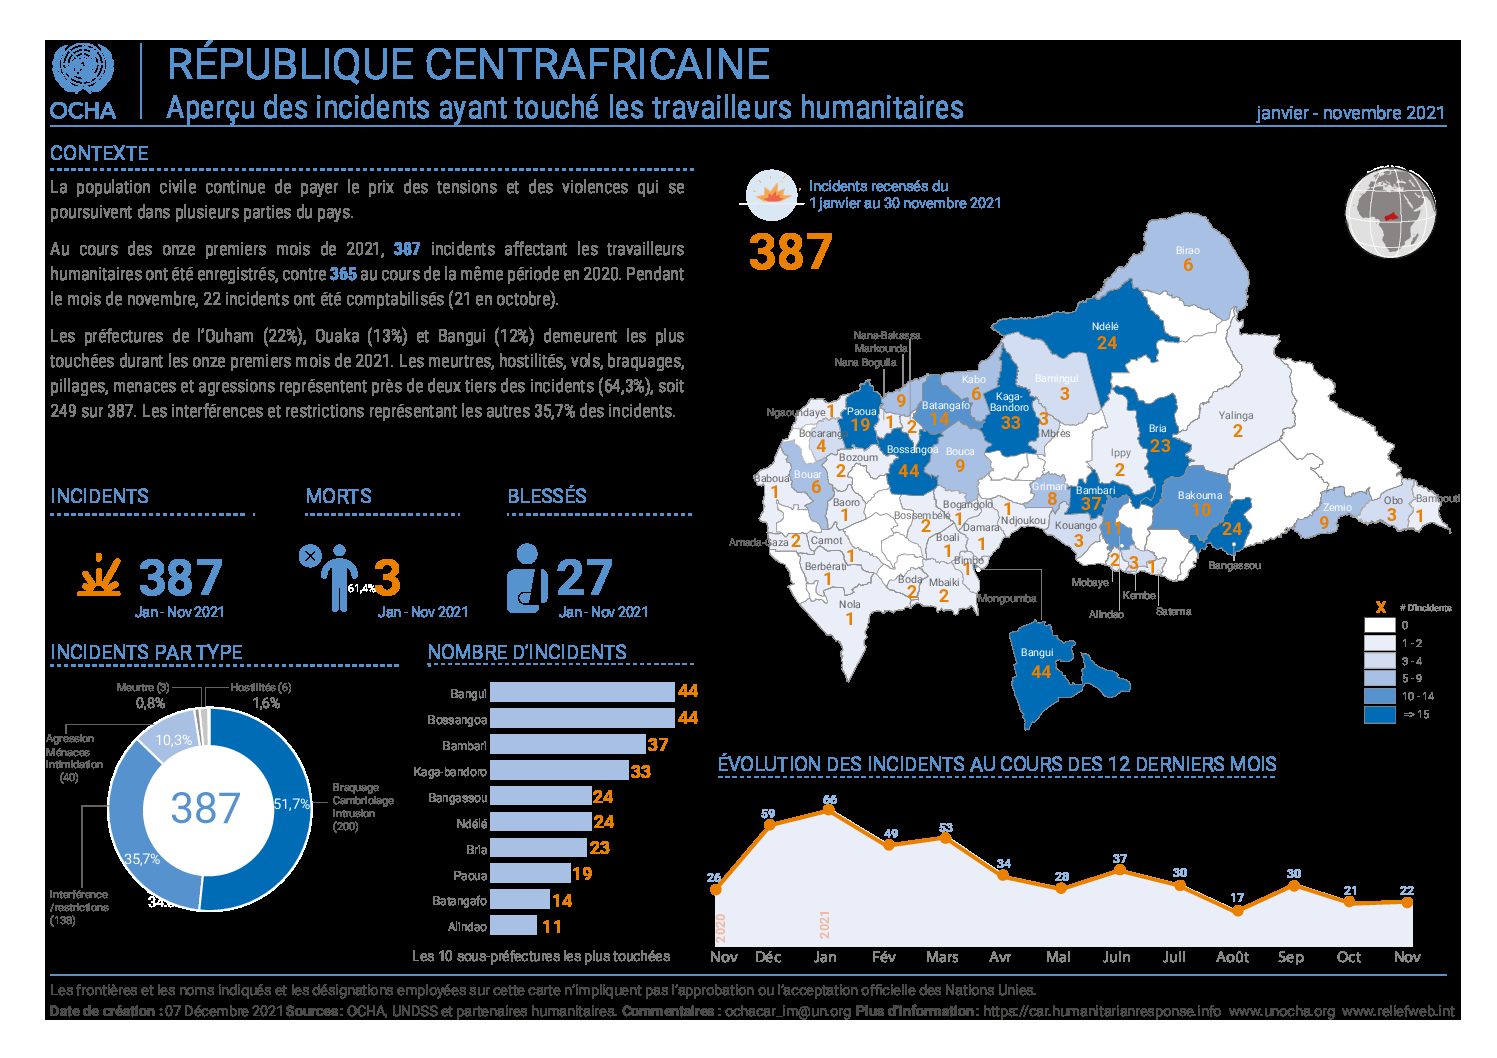 Centrafrique : Au cours des onze premiers mois de 2021, OCHA a enregistré 387 incidents affectant les travailleurs humanitaires